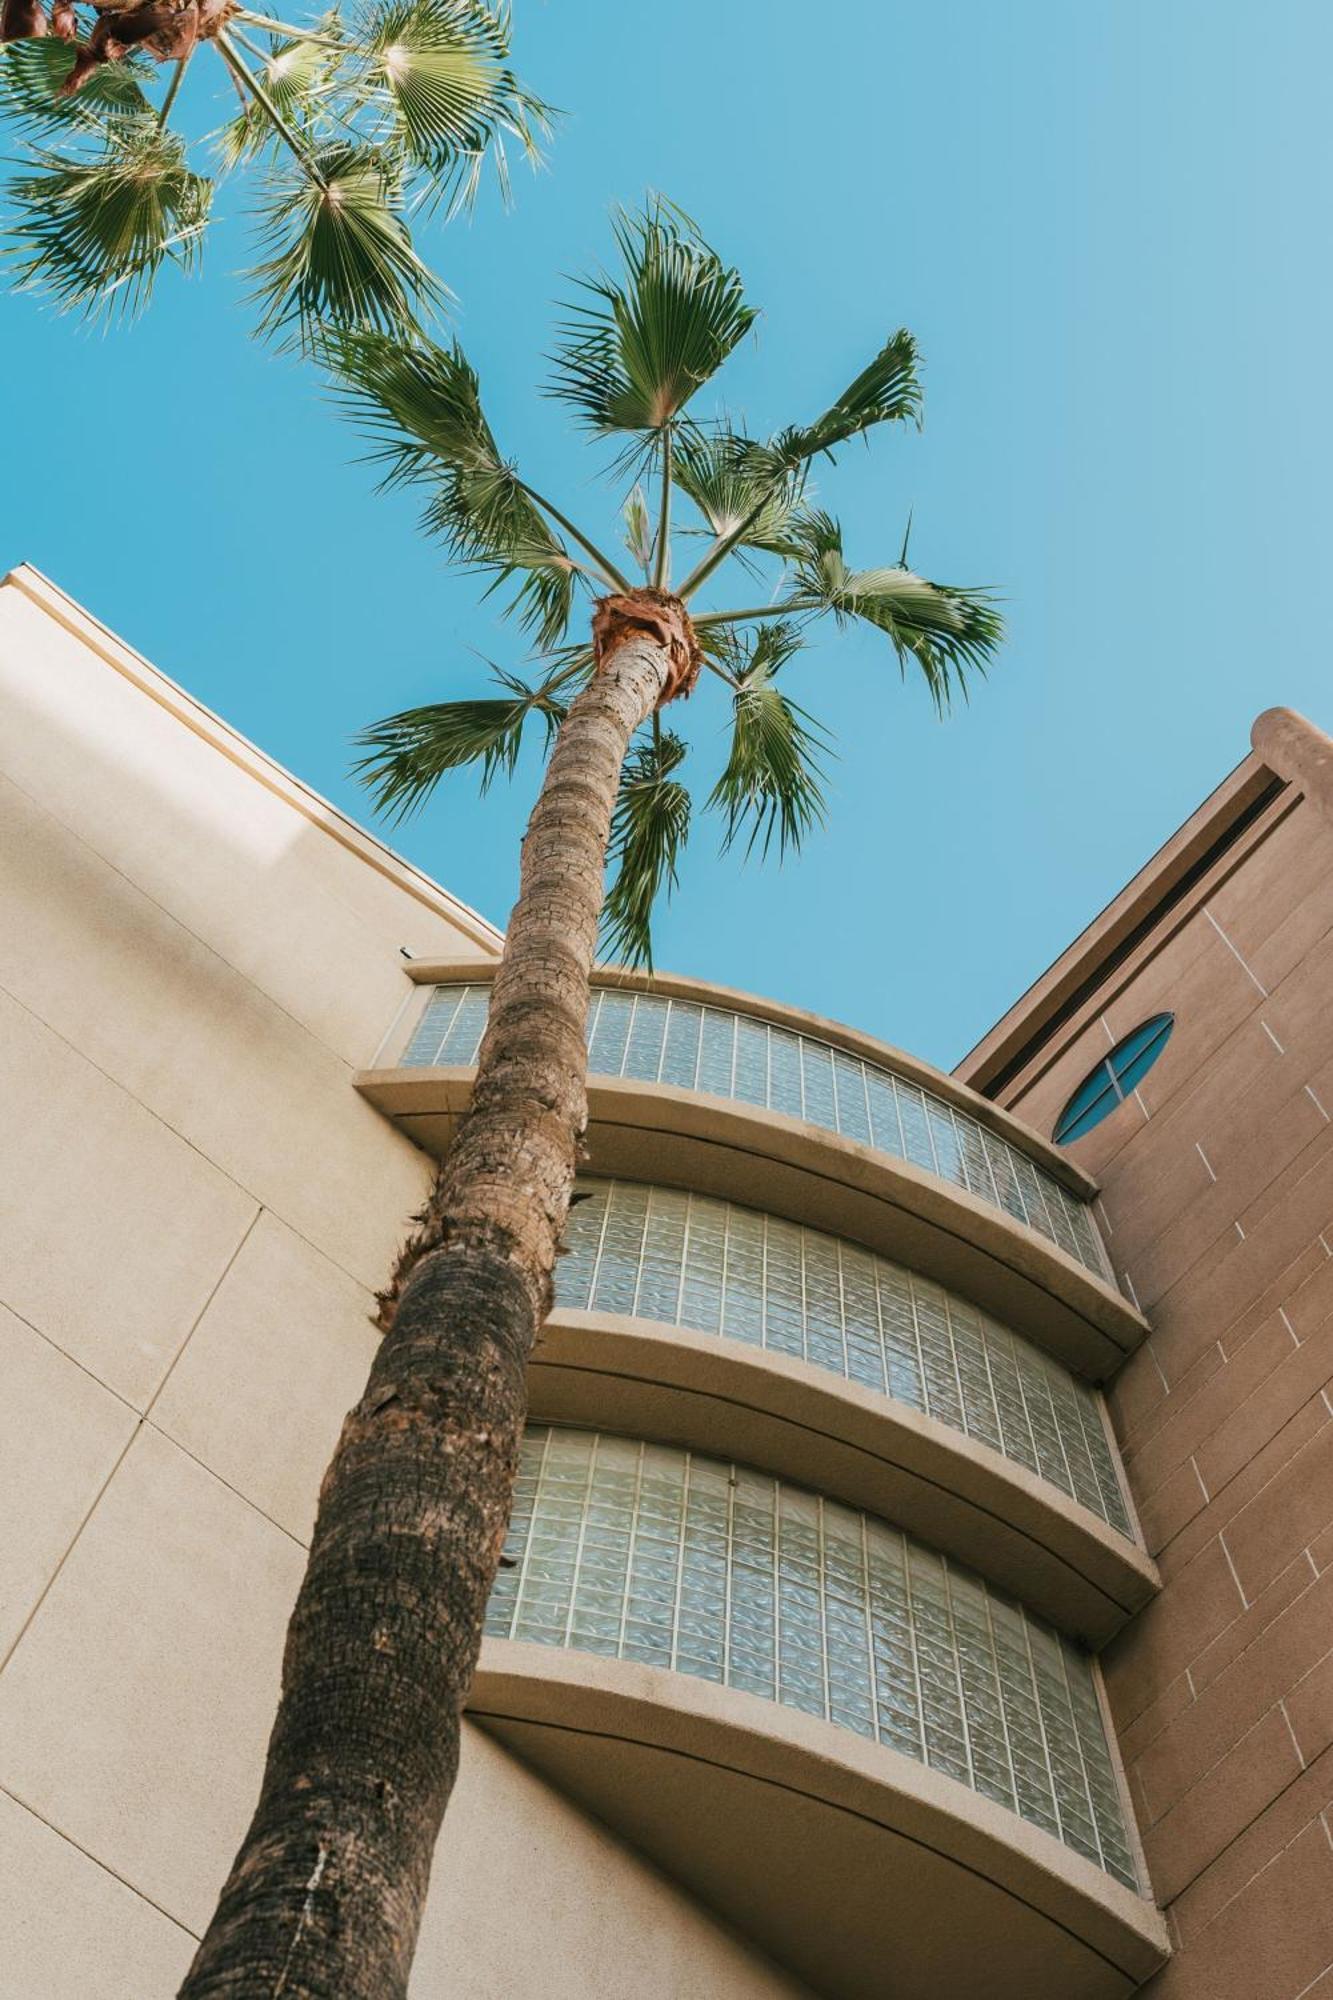 ホテル コートヤード ロサンゼルス Lax / センチュリー ブルバード エクステリア 写真